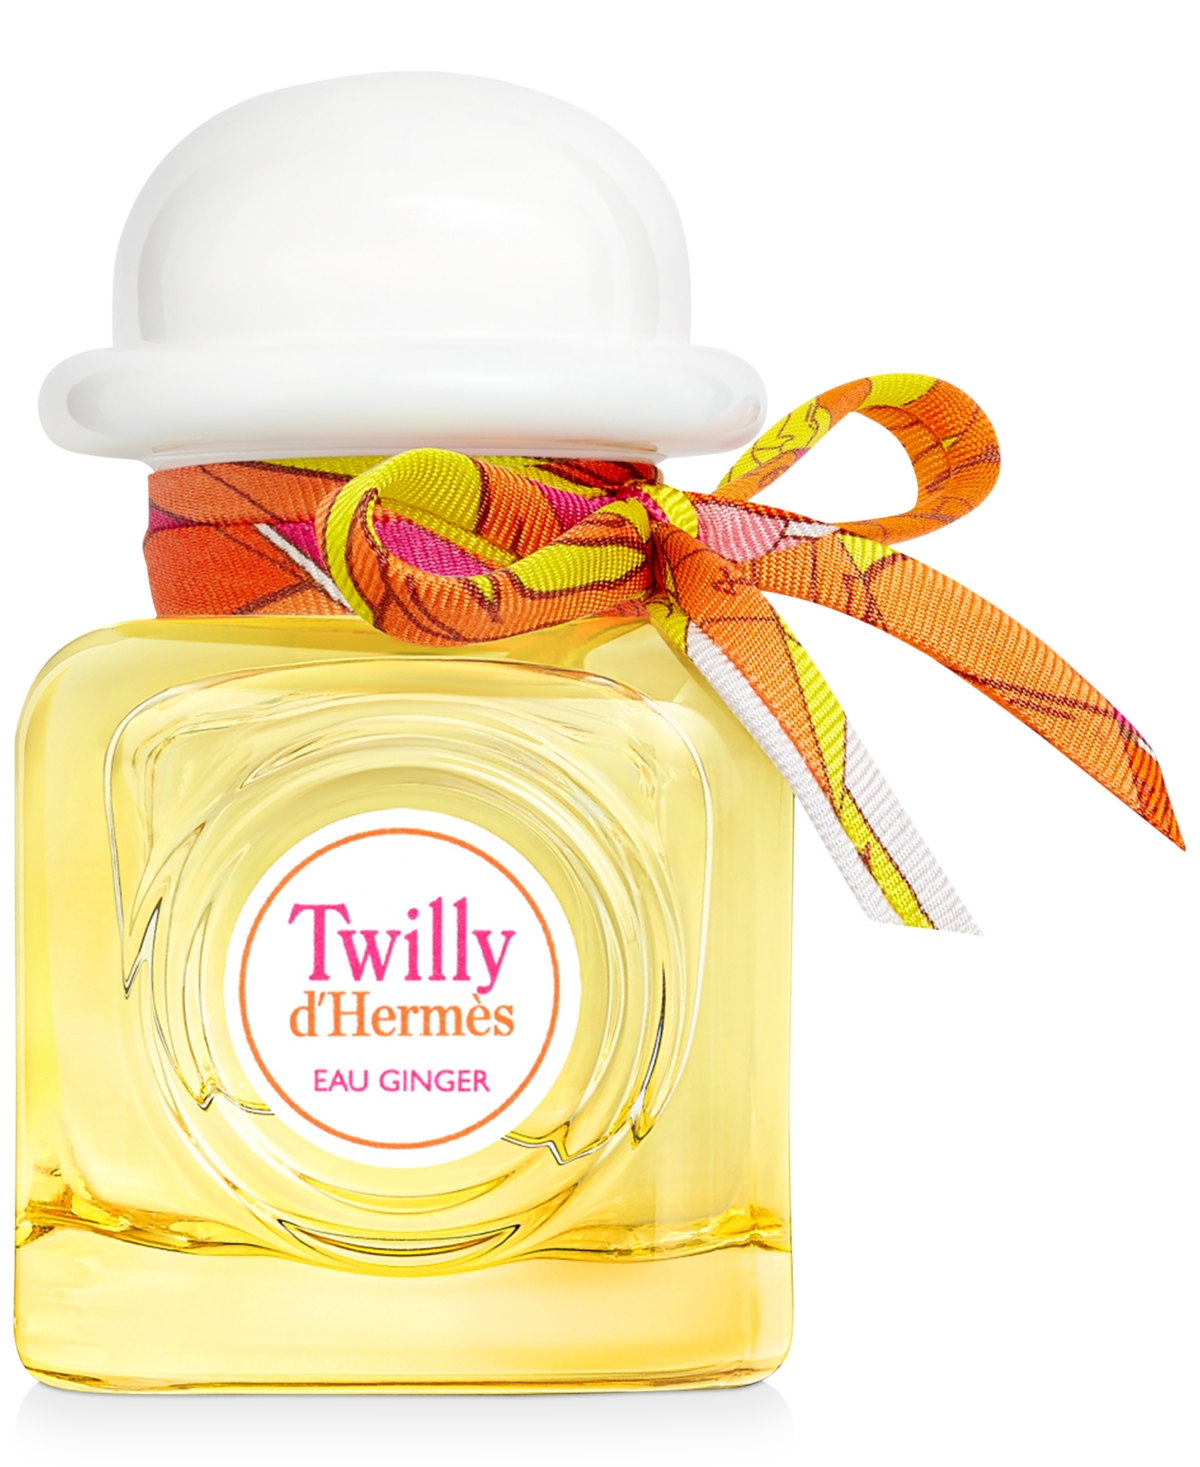 HERMES Twilly d'Hermes Eau Ginger Eau de Parfum, 1.6-oz.